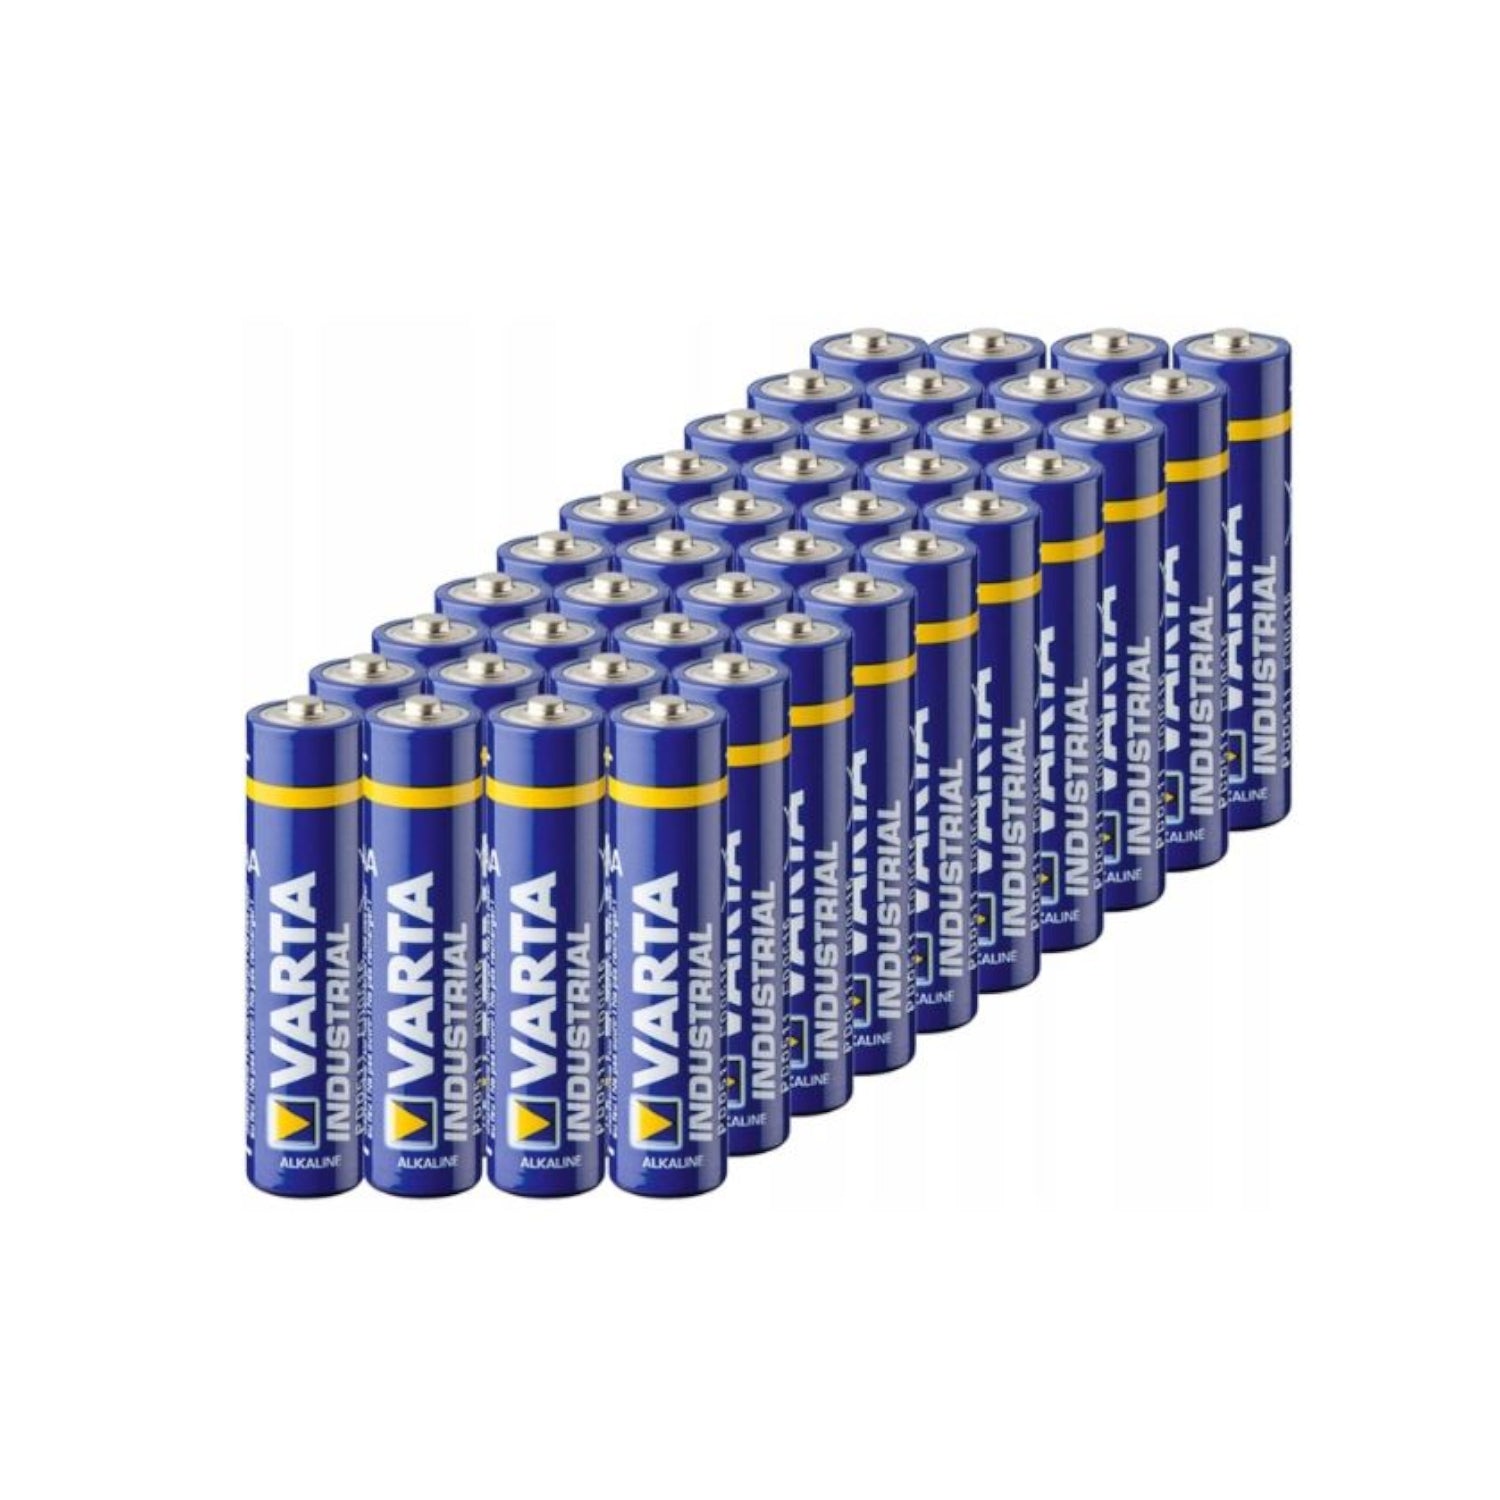 40 x Varta Industrial PRO LR3 / AAA 4003 batteries (box)